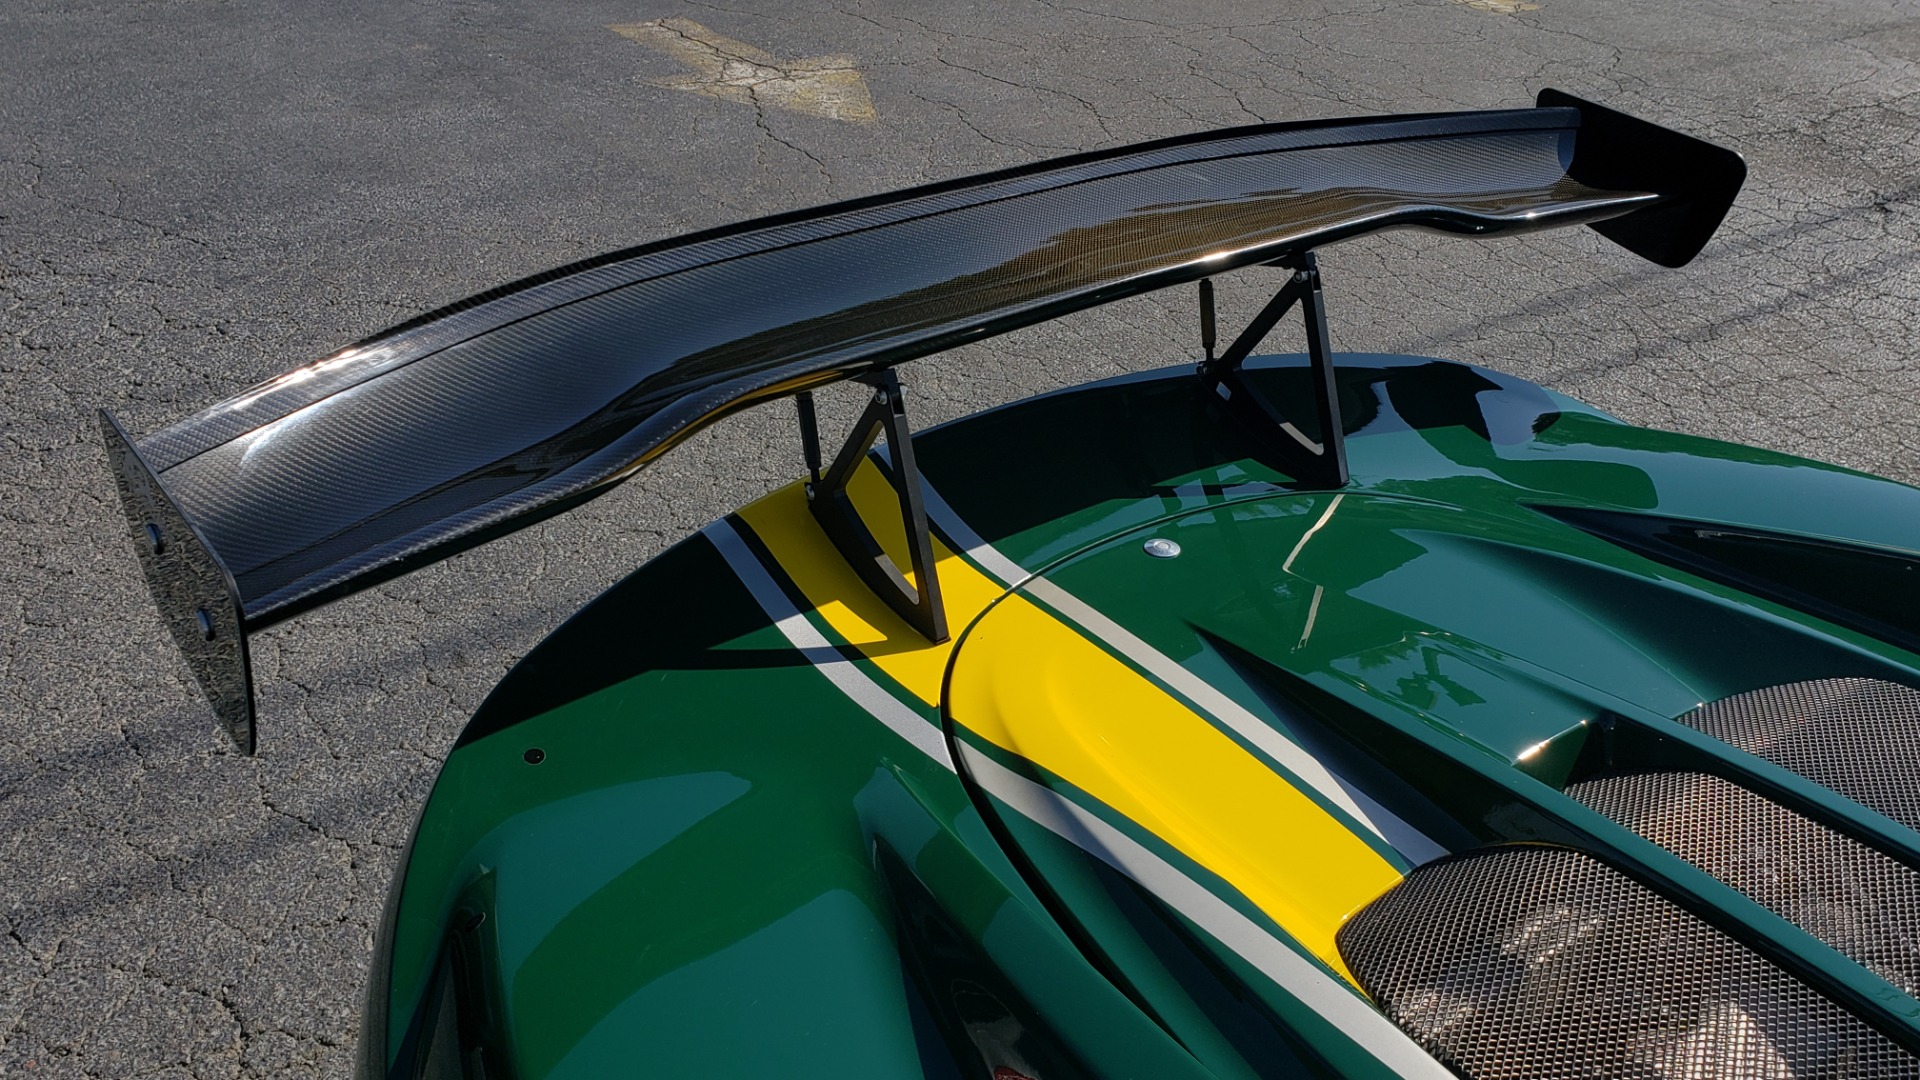 Large Mounted Lotus Elise Print Art Racing Car KW Davies 16” By 12” 